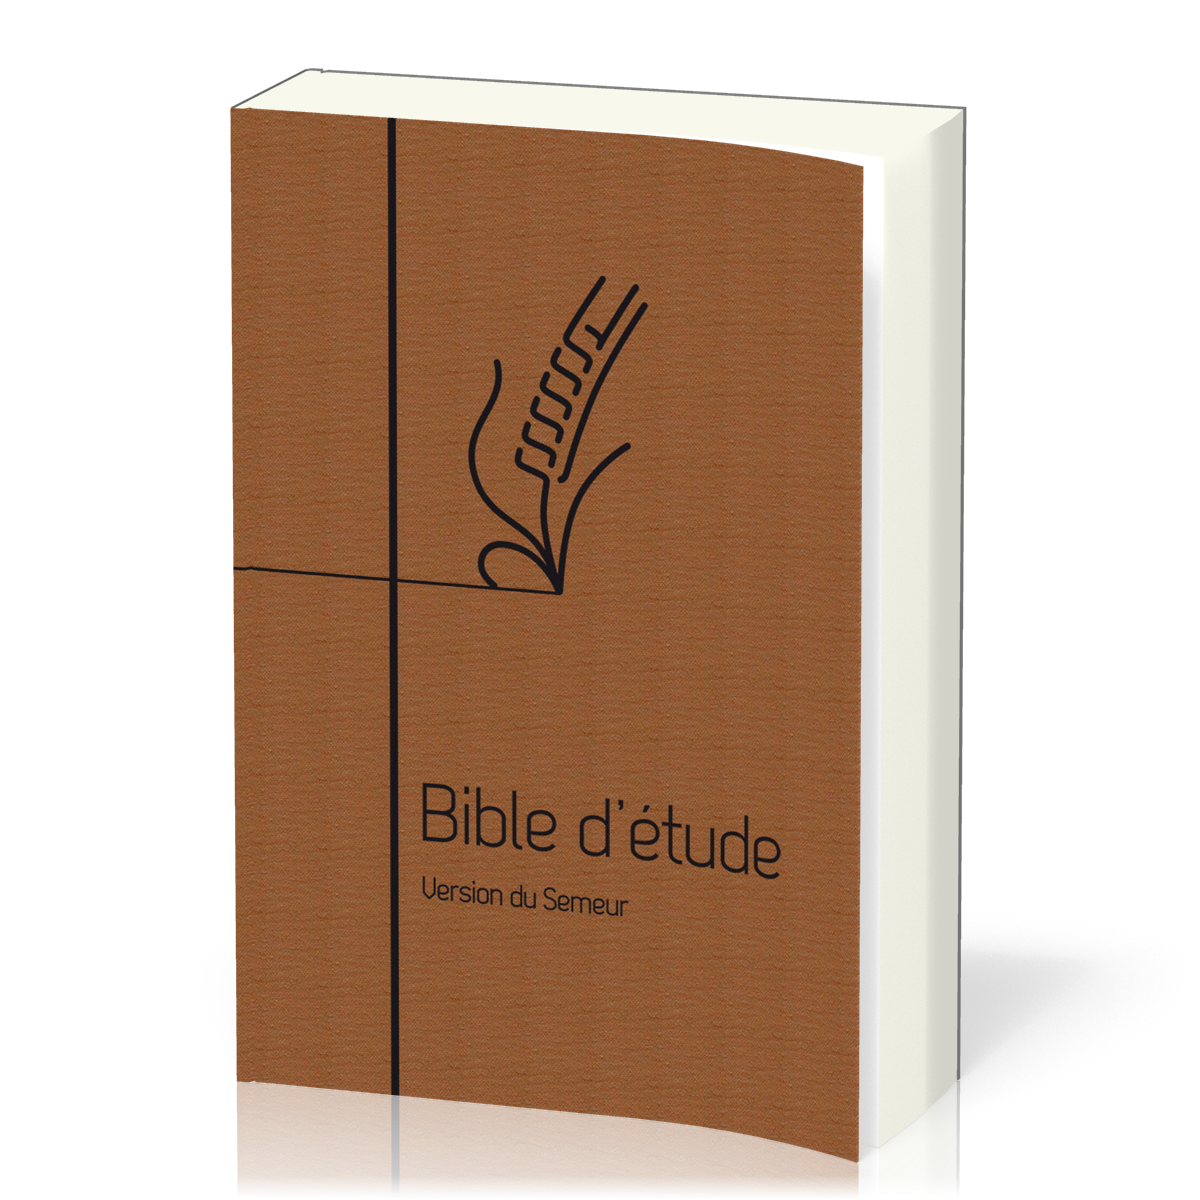 Bible d'étude Semeur 2015 couverture souple brune tranche blanche